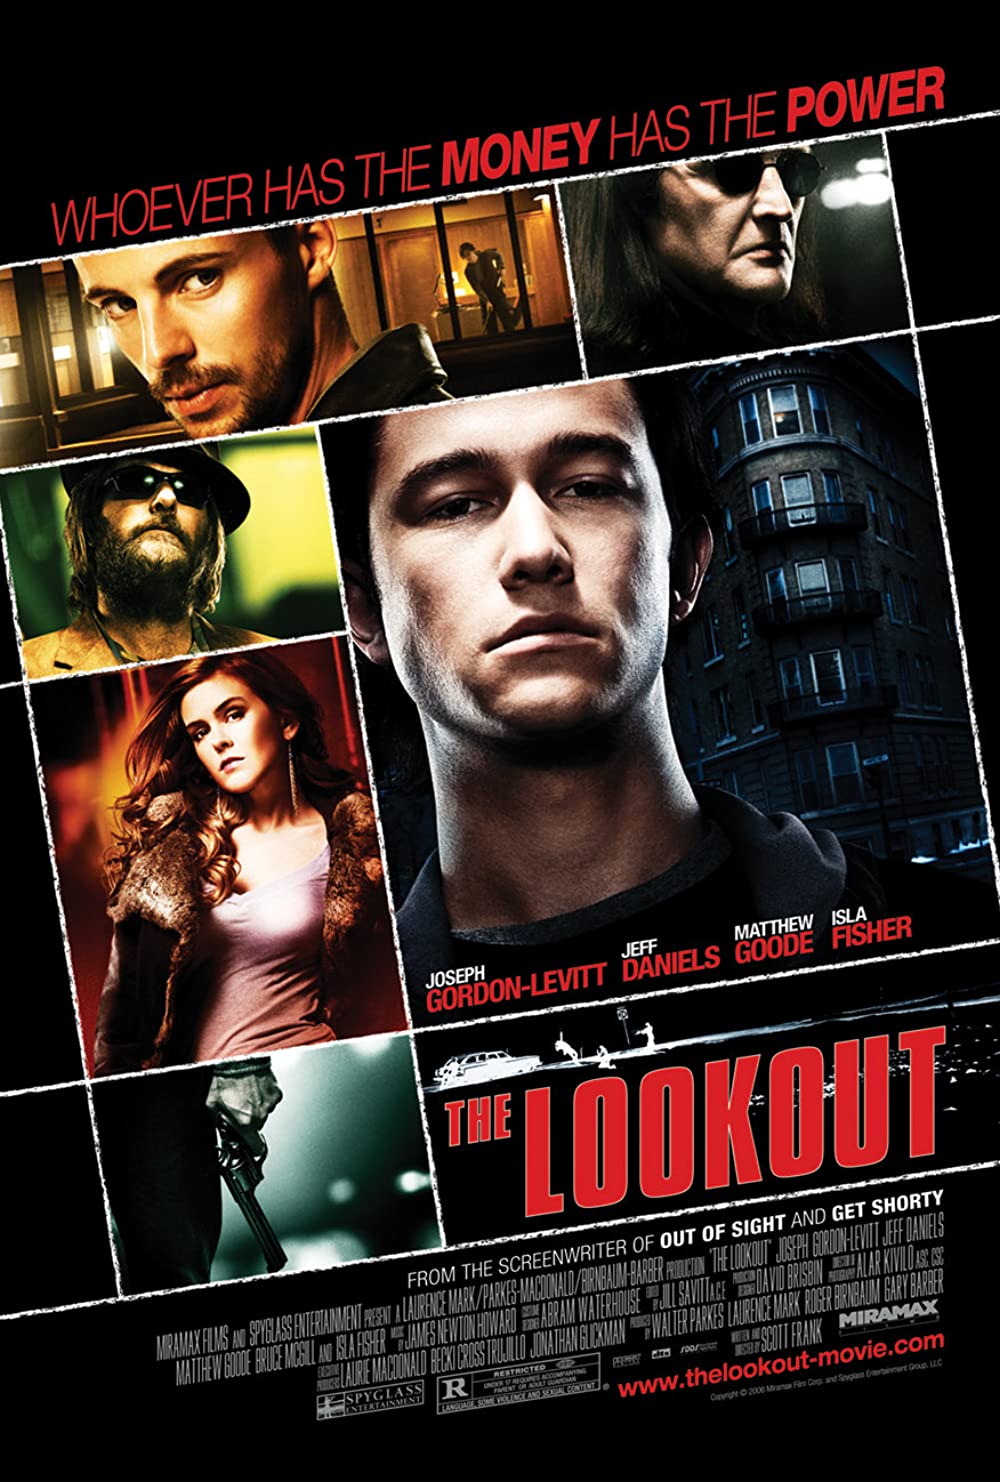 ดูหนังออนไลน์ฟรี The Lookout 2007 ดับแผนปล้น ต้องชนนรก 037moviefree